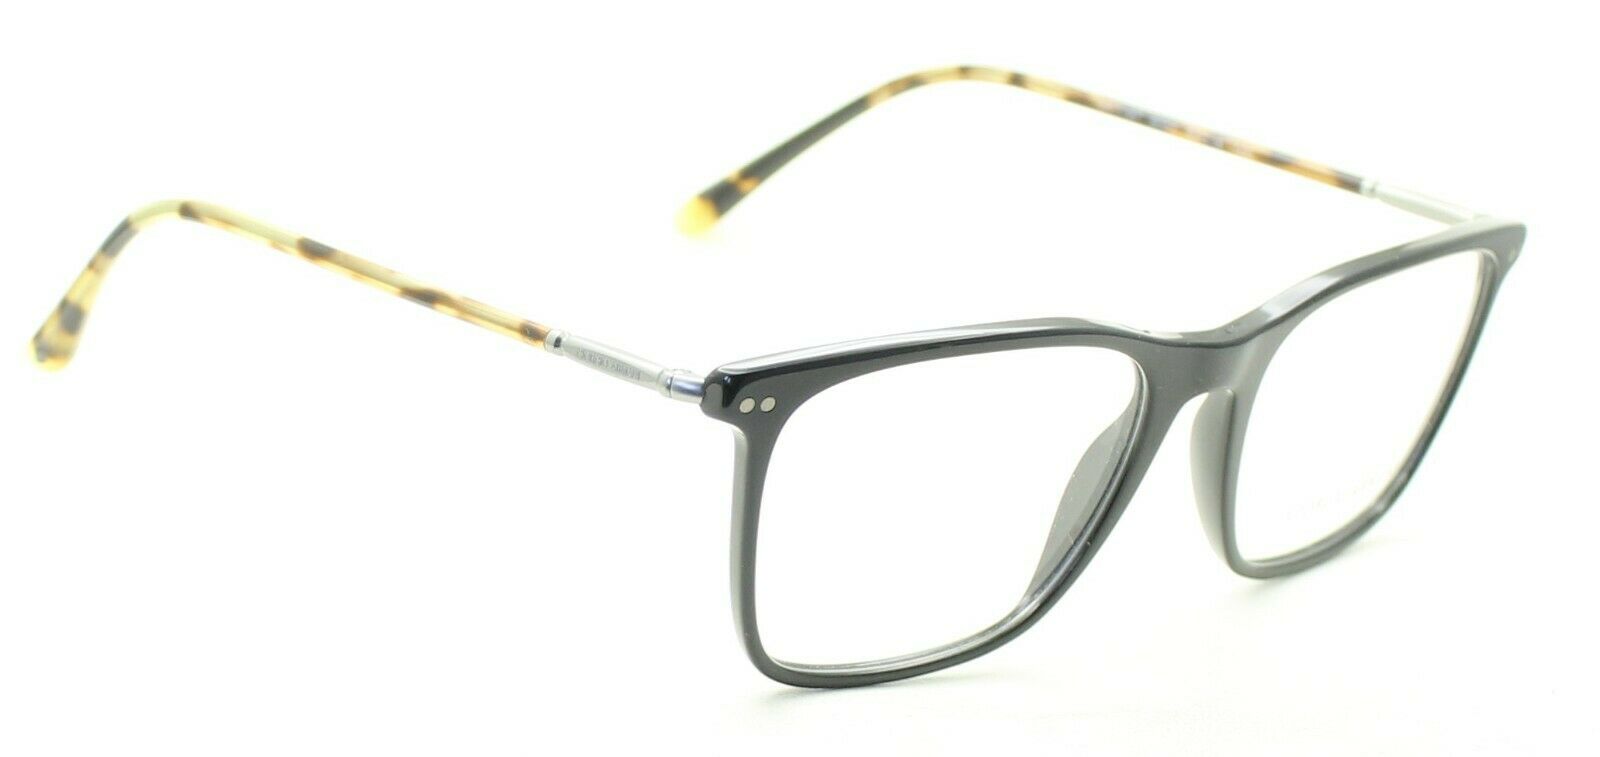 GIORGIO ARMANI AR 7197 5001 Eyewear FRAMES Eyeglasses RX Optical Glasses - Italy